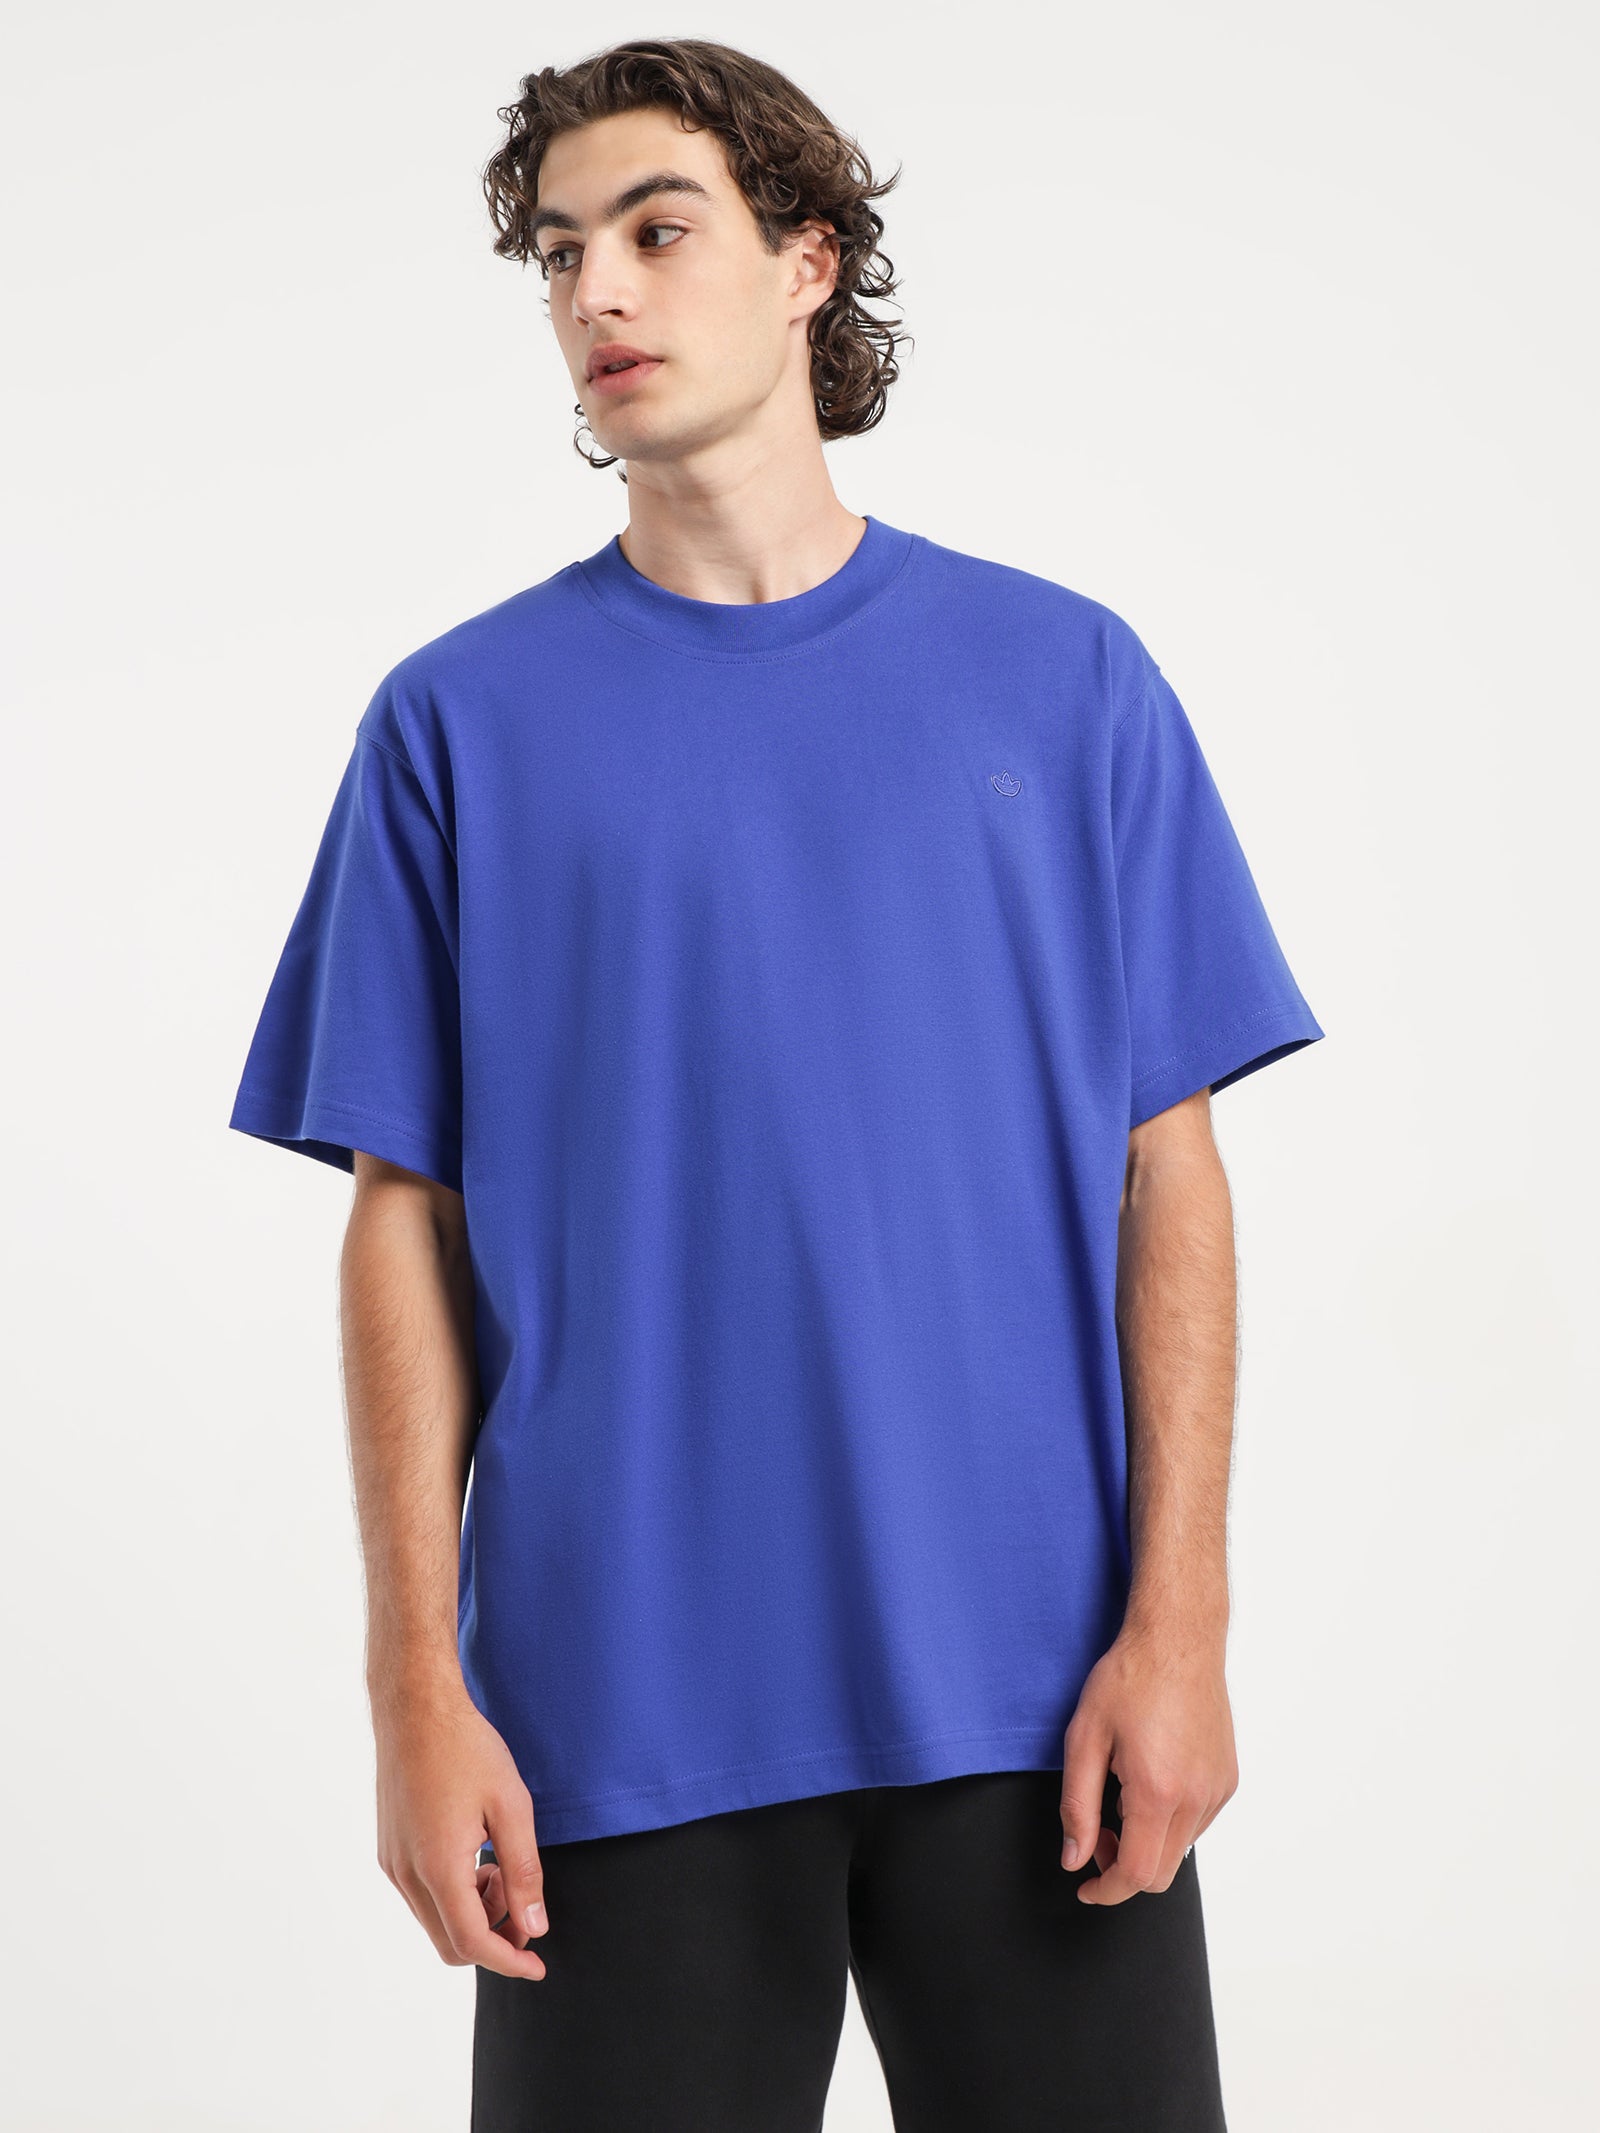 Adicolor Contempo T-Shirt in Blue - Glue Store